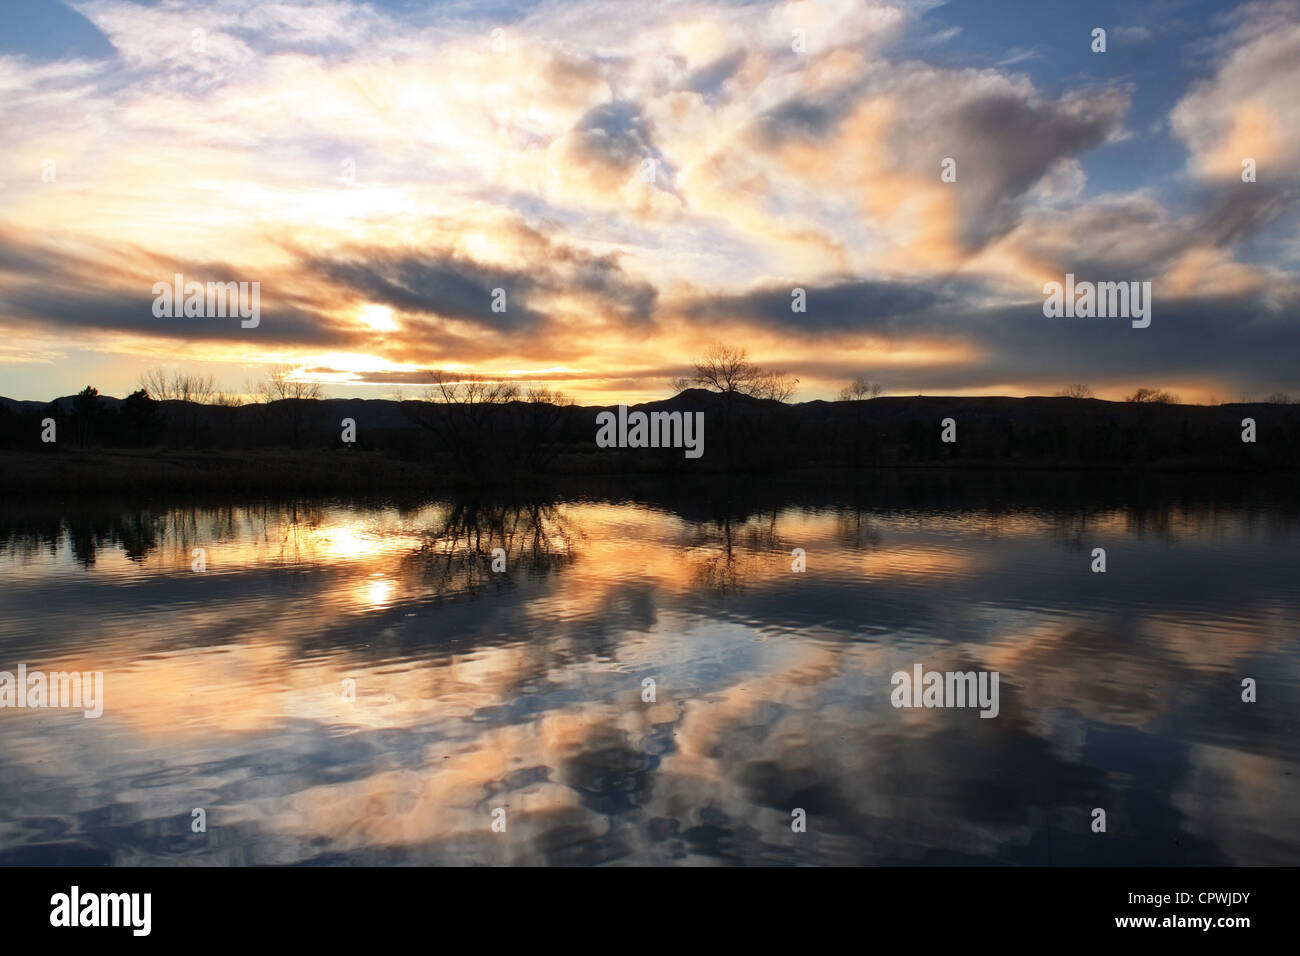 Sonnenuntergang spiegelt sich im Wasser des Sees Stockfoto